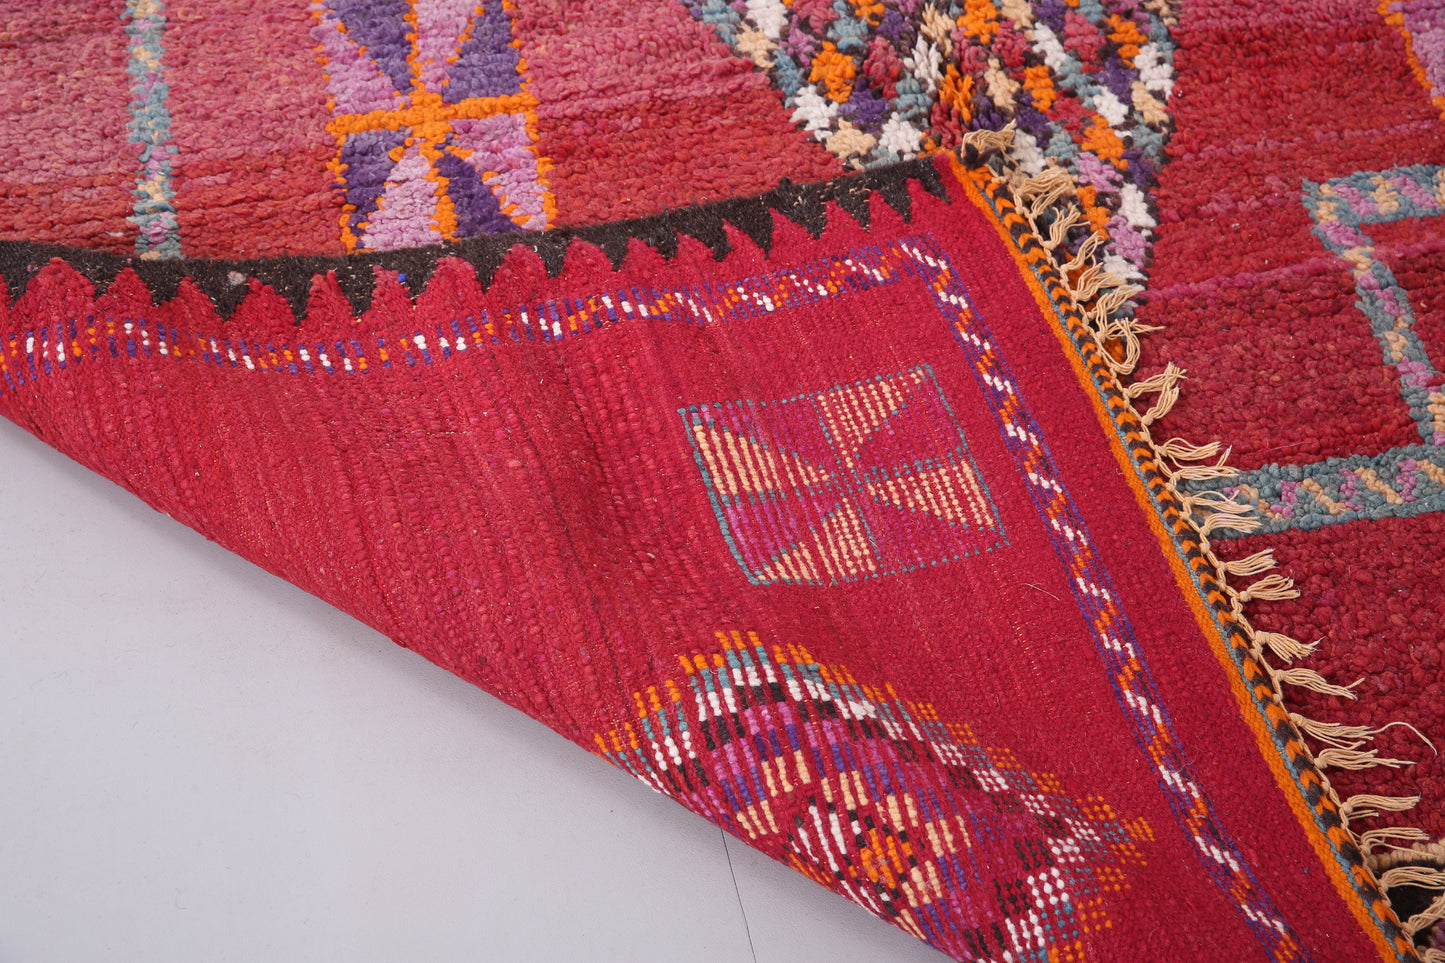 Roter marokkanischer Vintage-Teppich 6 FT x 11,2 FT - Wohnzimmerteppich - handgemachter Teppich - Berberteppich aus Marokko - Teppich im Bohème-Stil - Vintage-Tribal-Teppich